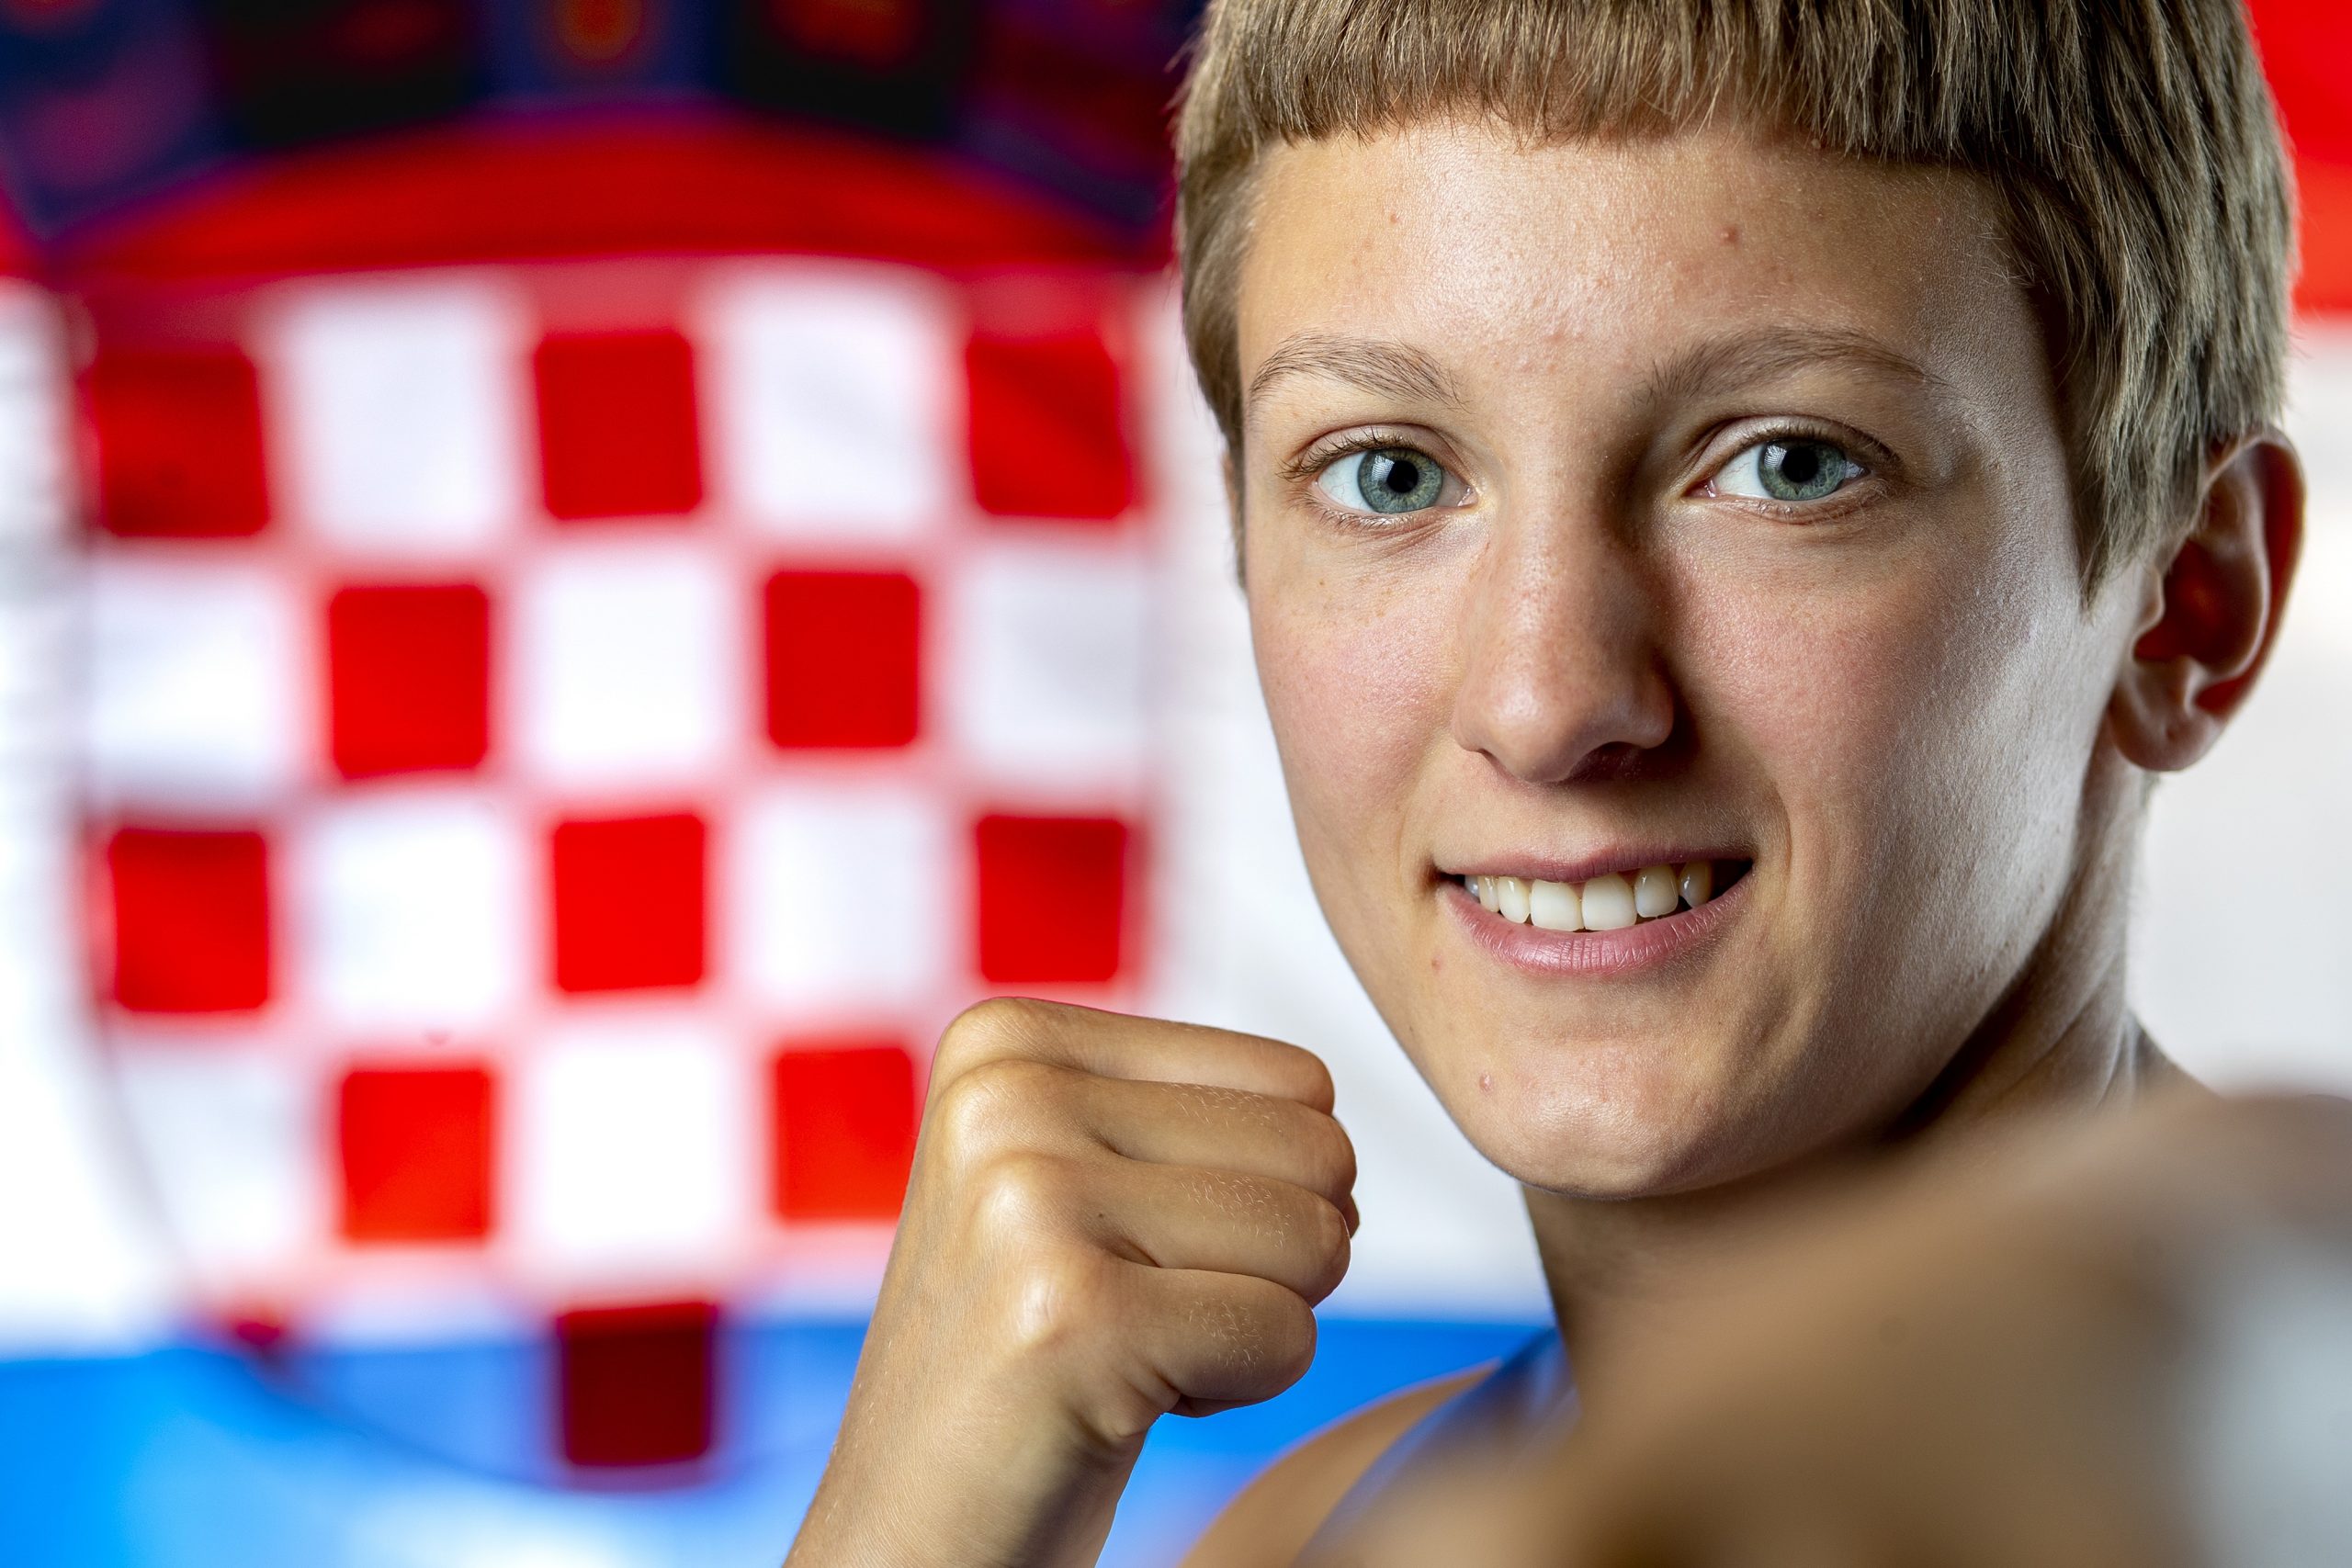 02.07.2021., Zagreb, Hrvatska - Nikolina Cacic postala je prva hrvatska boksacka olimpijka u povijesti nakon što je na olimpijskim kvalifikacijama u Parizu izborila Olimpijske igre u Tokiju u kategoriji 57 kg.
Photo: Igor Kralj/PIXSELL